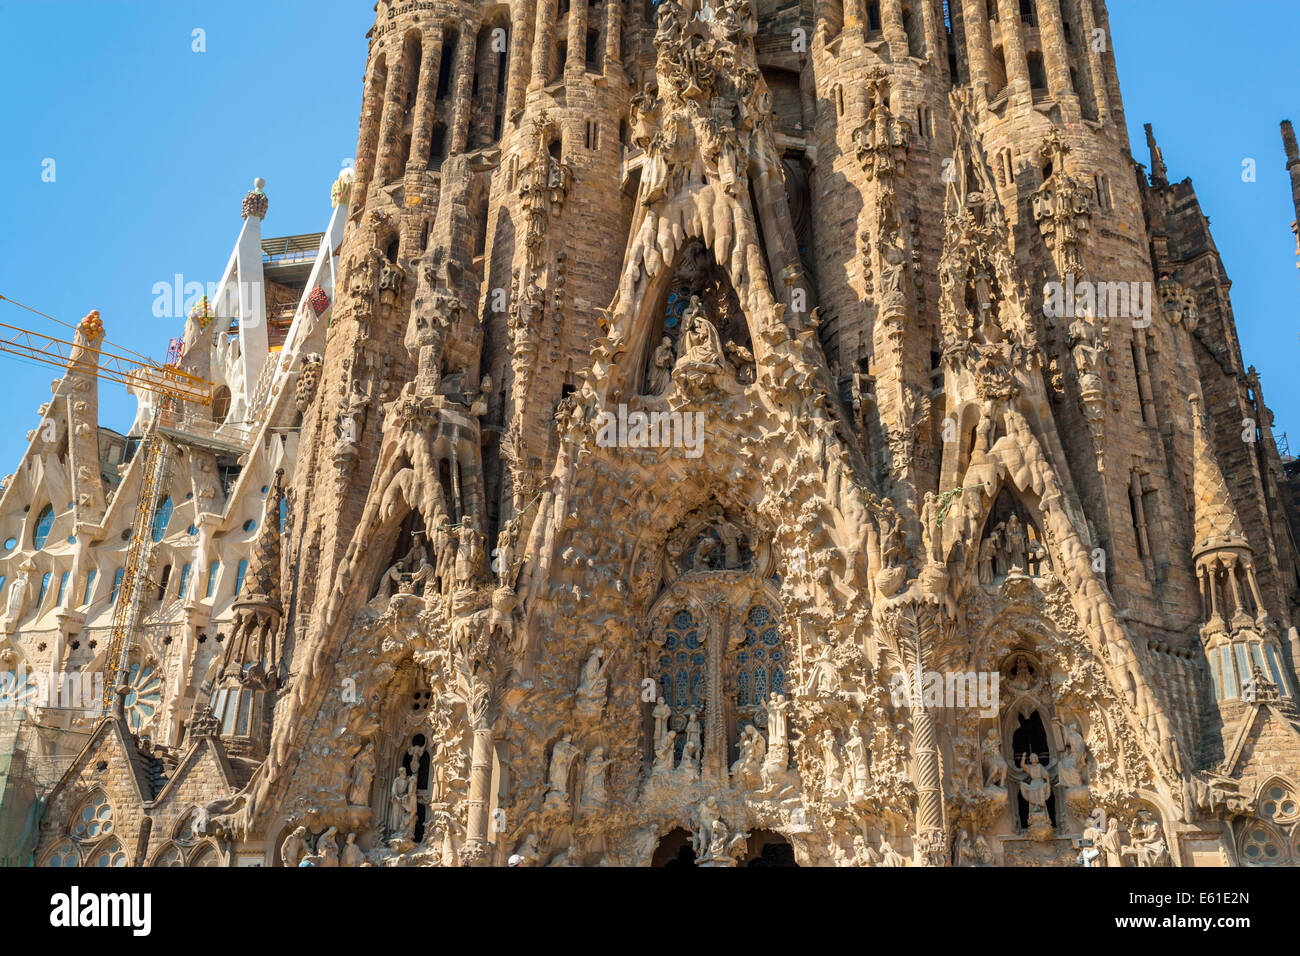 La Sagrada Família de Antoni Gaudí la famosa iglesia inacabada en Barcelona  España comenzó en la década de 1880. JMH6329 Fotografía de stock - Alamy